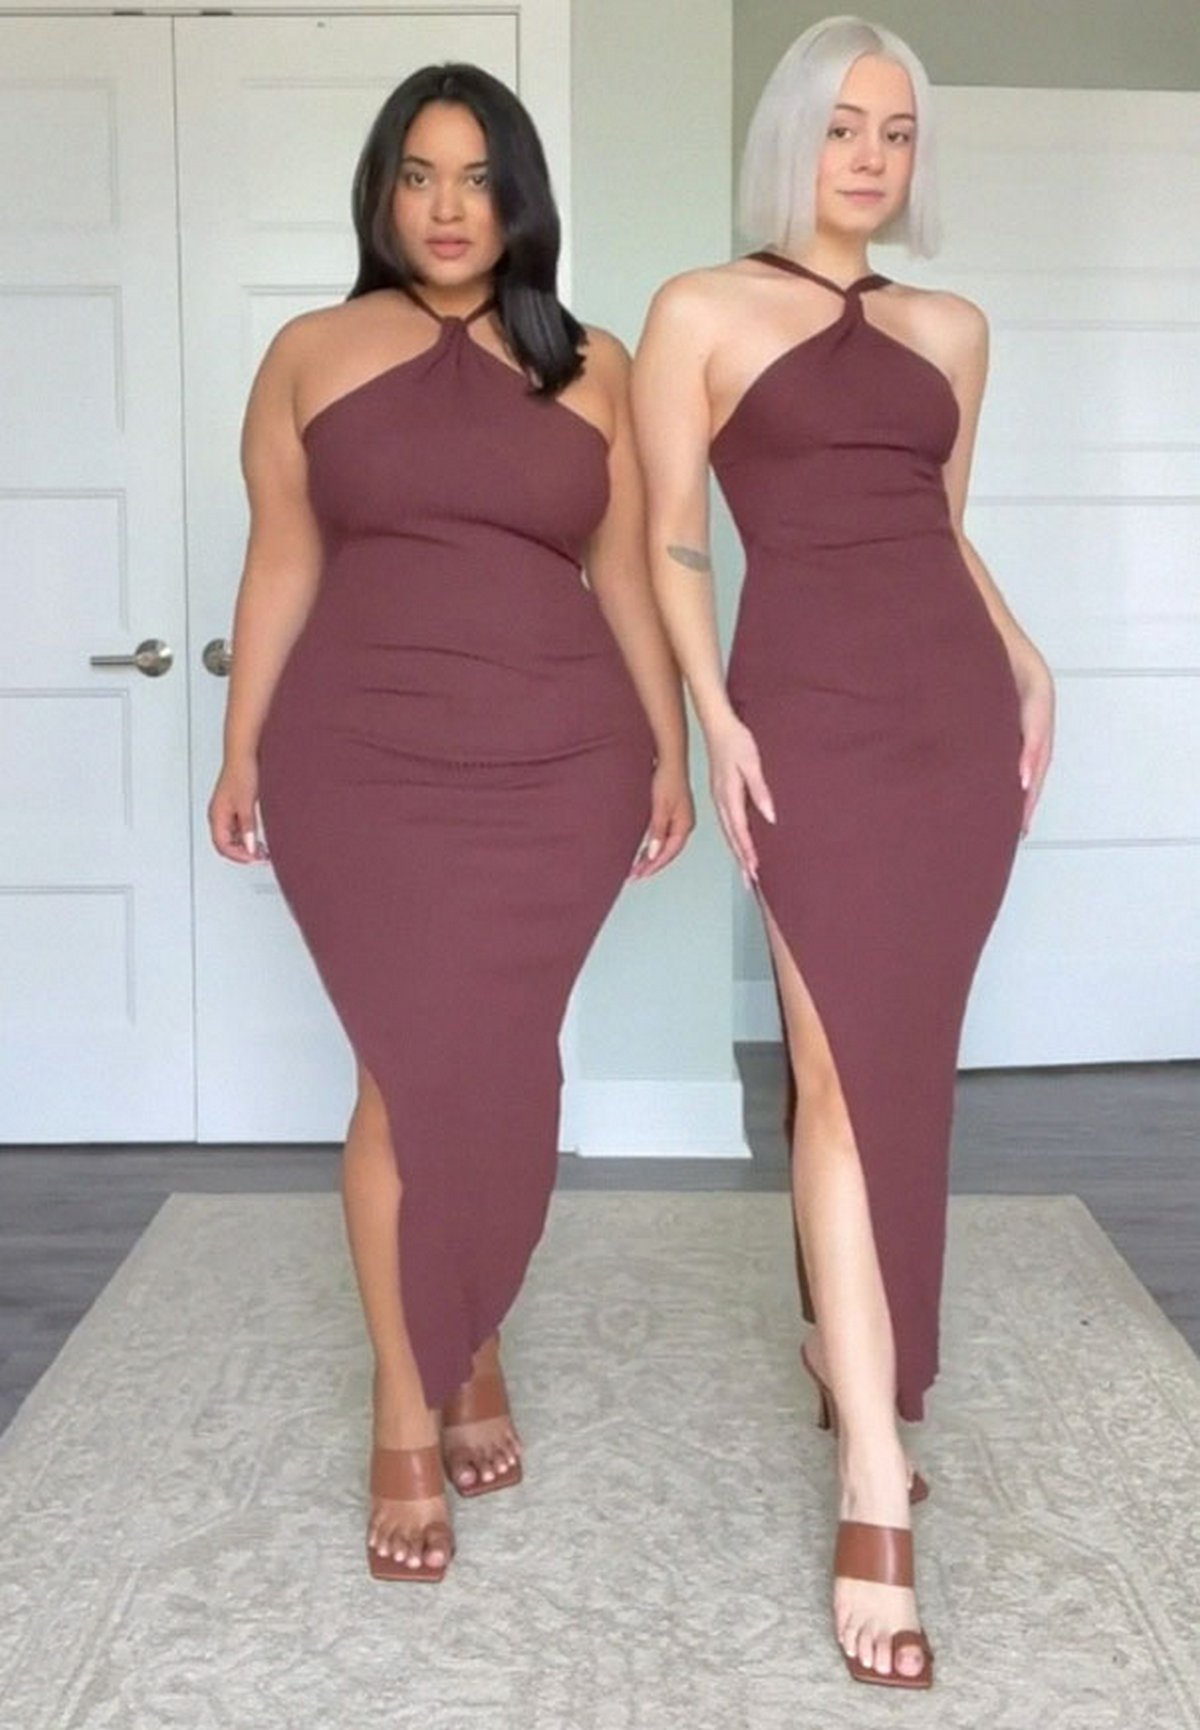 Ces deux amies montrent ce que donne la même tenue sur leurs tailles différentes